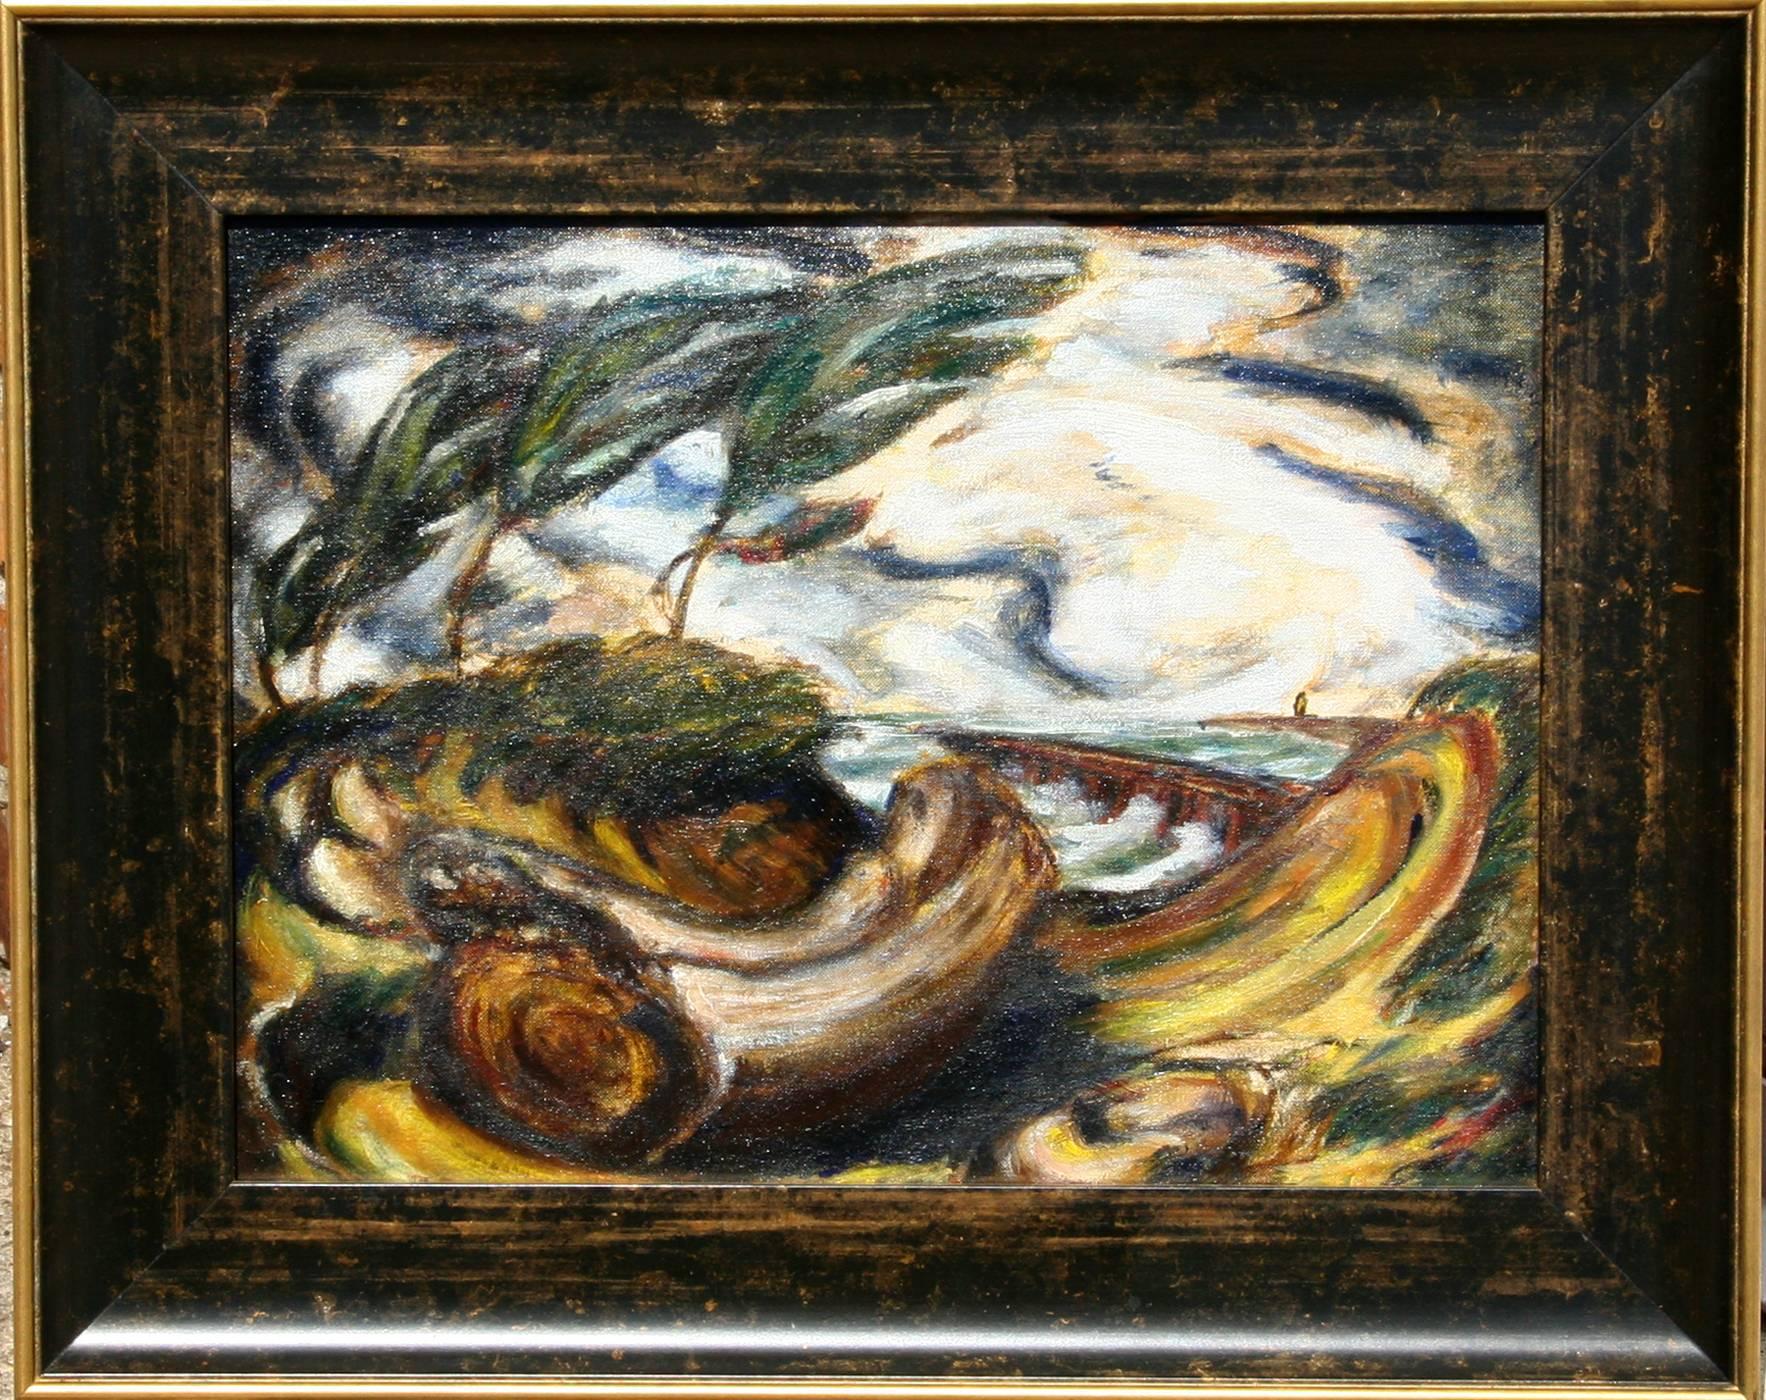 Künstler: Philip Pearlstein, Amerikaner (1924 - )
Titel: Landschaft
Jahr: um 1940
Medium: Öl auf Karton 
Größe: 12 in. x 26 in. (30,48 cm x 66,04 cm)
Rahmengröße: 16,5 x 20,5 Zoll